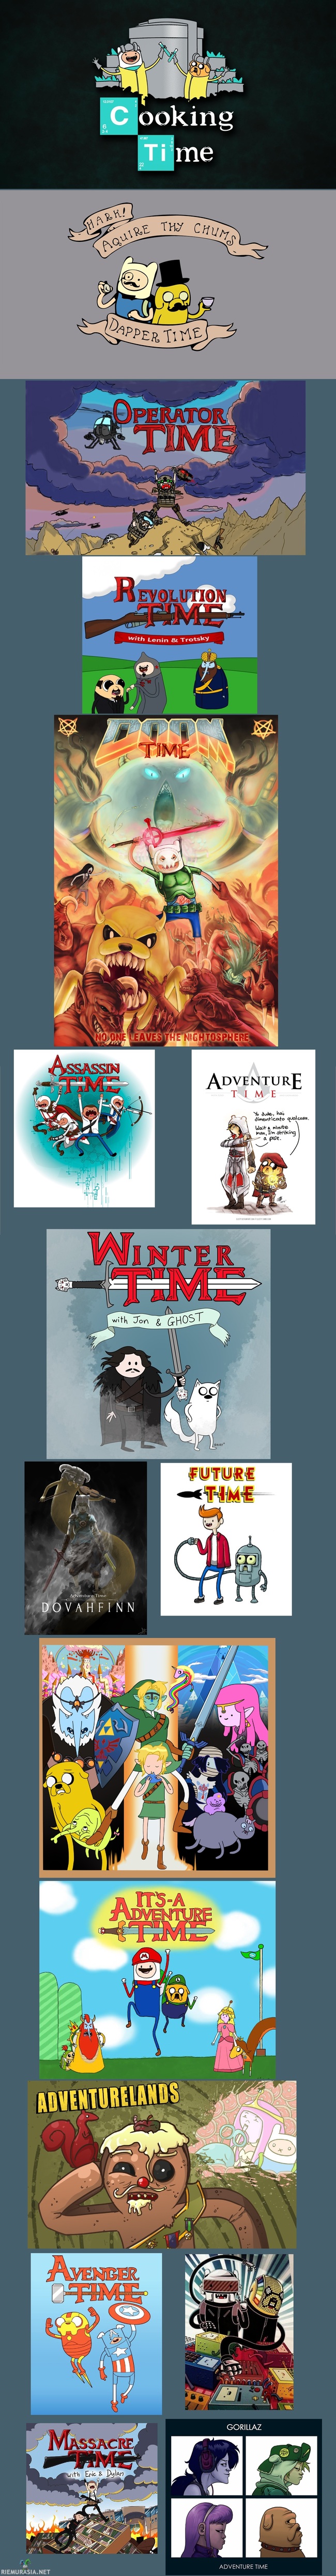 adventure time - kollaasi sarjan logosta ja hahmoista